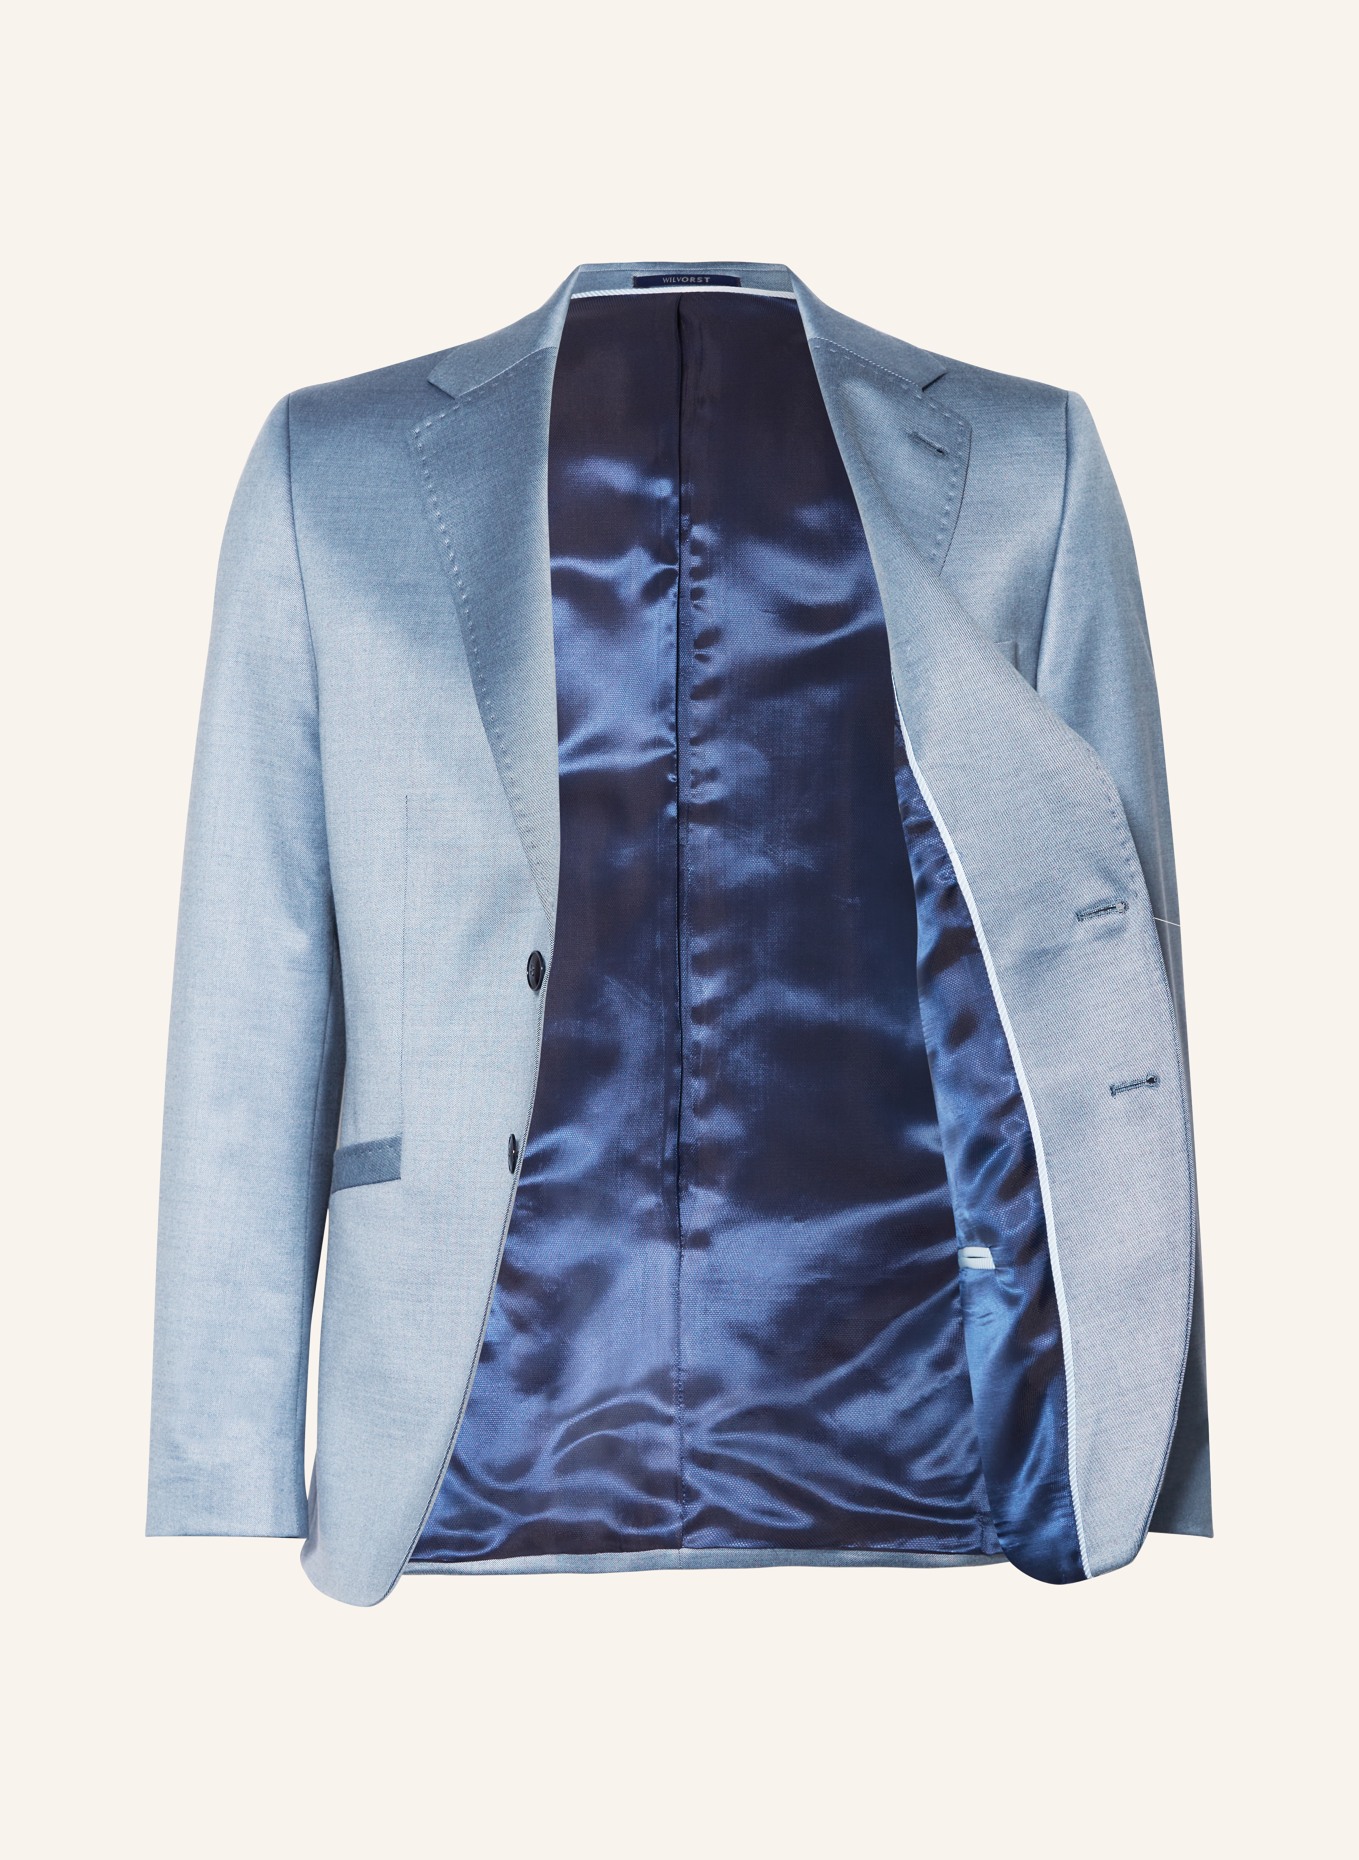 WILVORST Suit jacket extra slim fit, Color: LIGHT BLUE (Image 4)